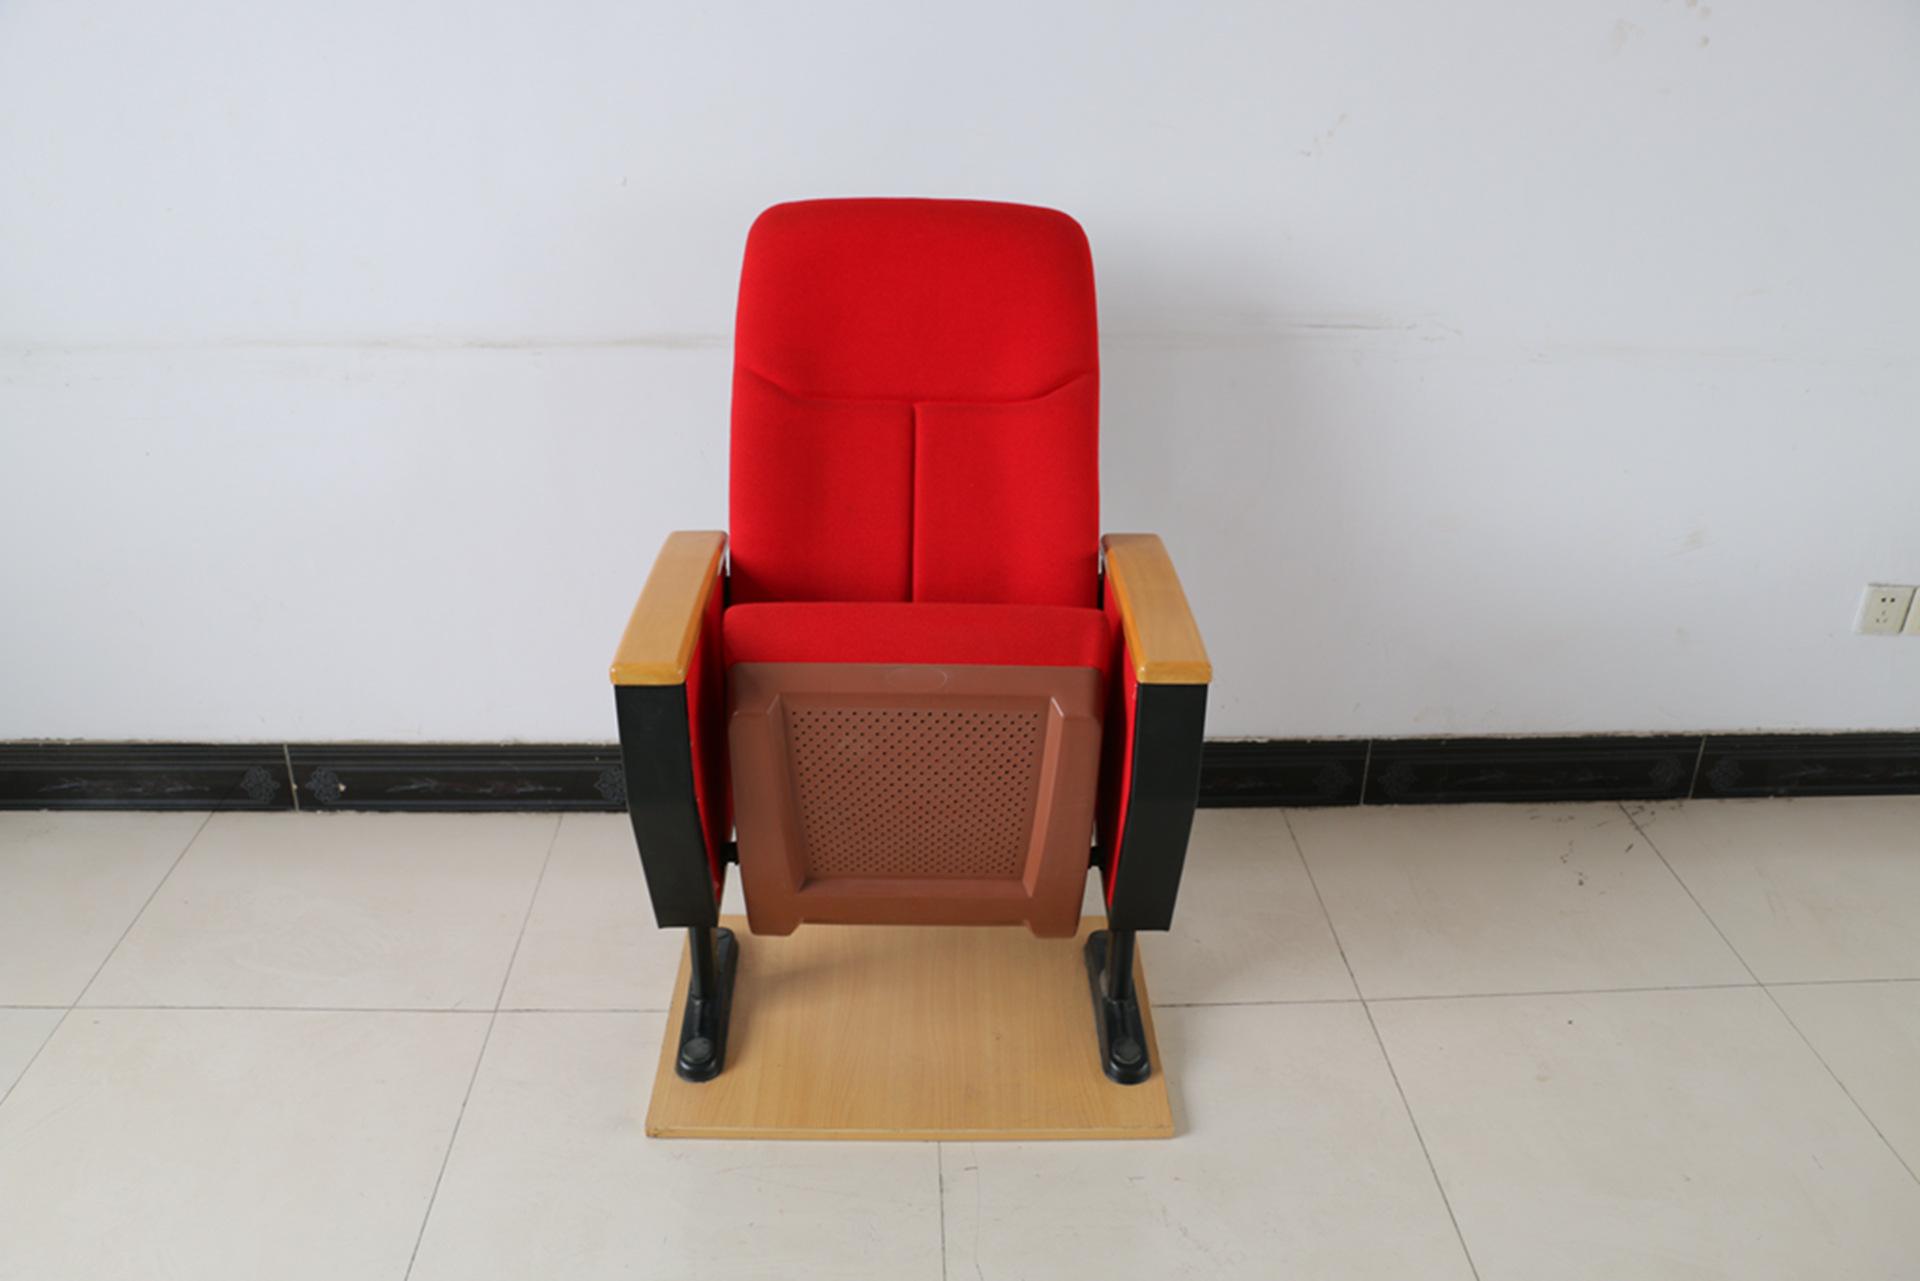 高品质华鑫软席排椅专业生产十五年